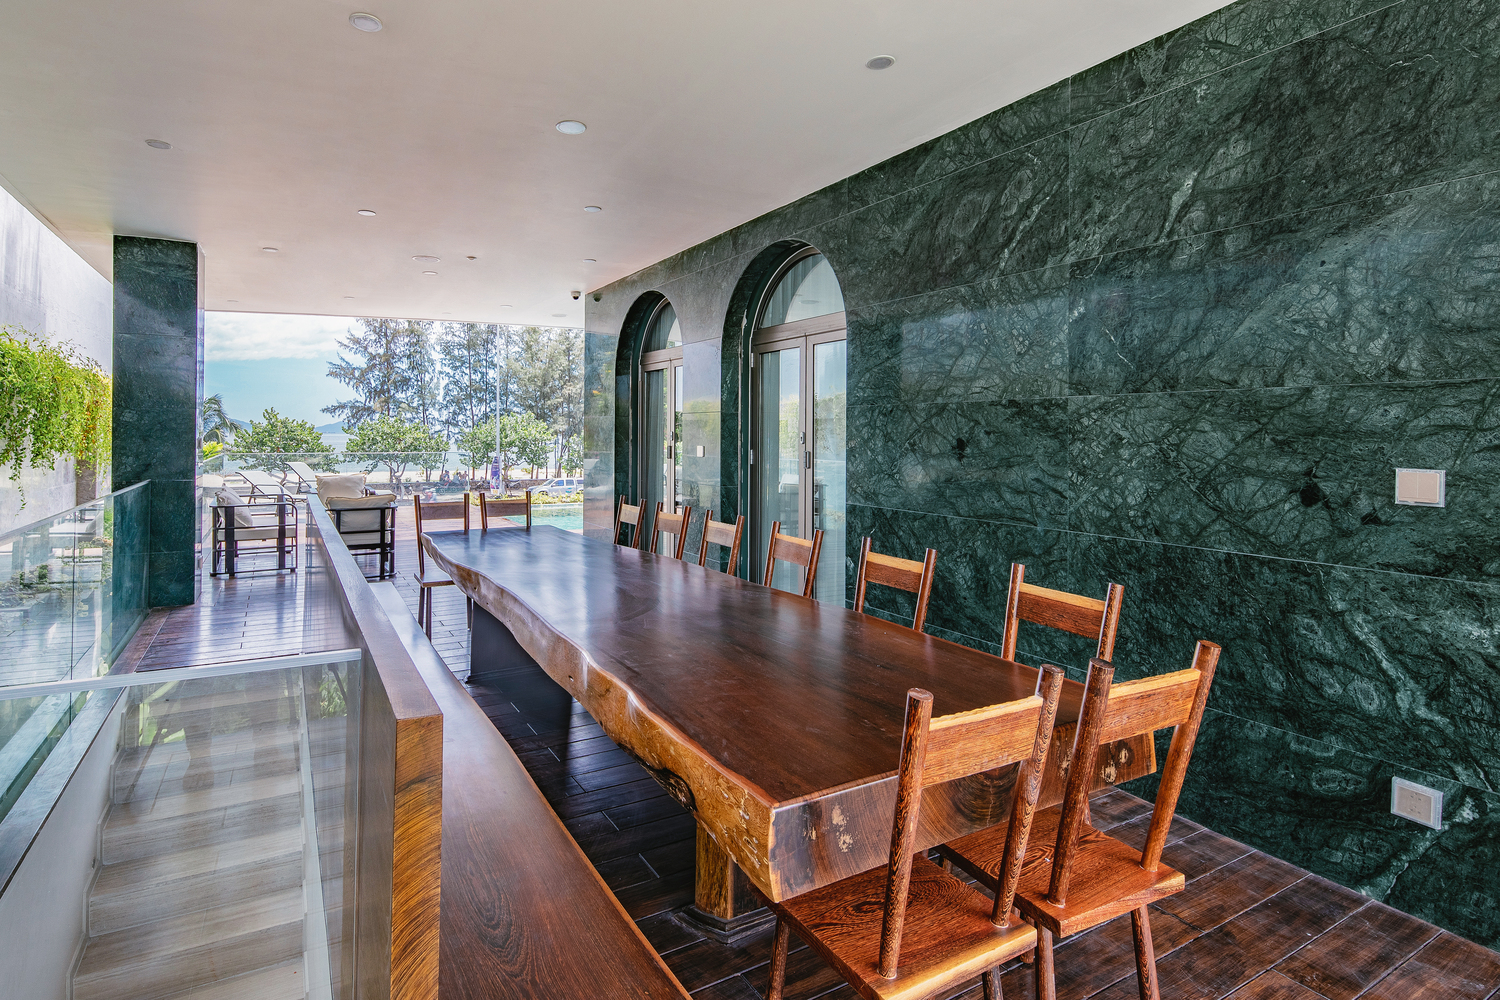 Hình ảnh cận cảnh bàn ăn dài làm bằng gỗ nguyên khối trong biệt thự, cạnh đó là tường ốp đá màu xanh ngọc sang trọng